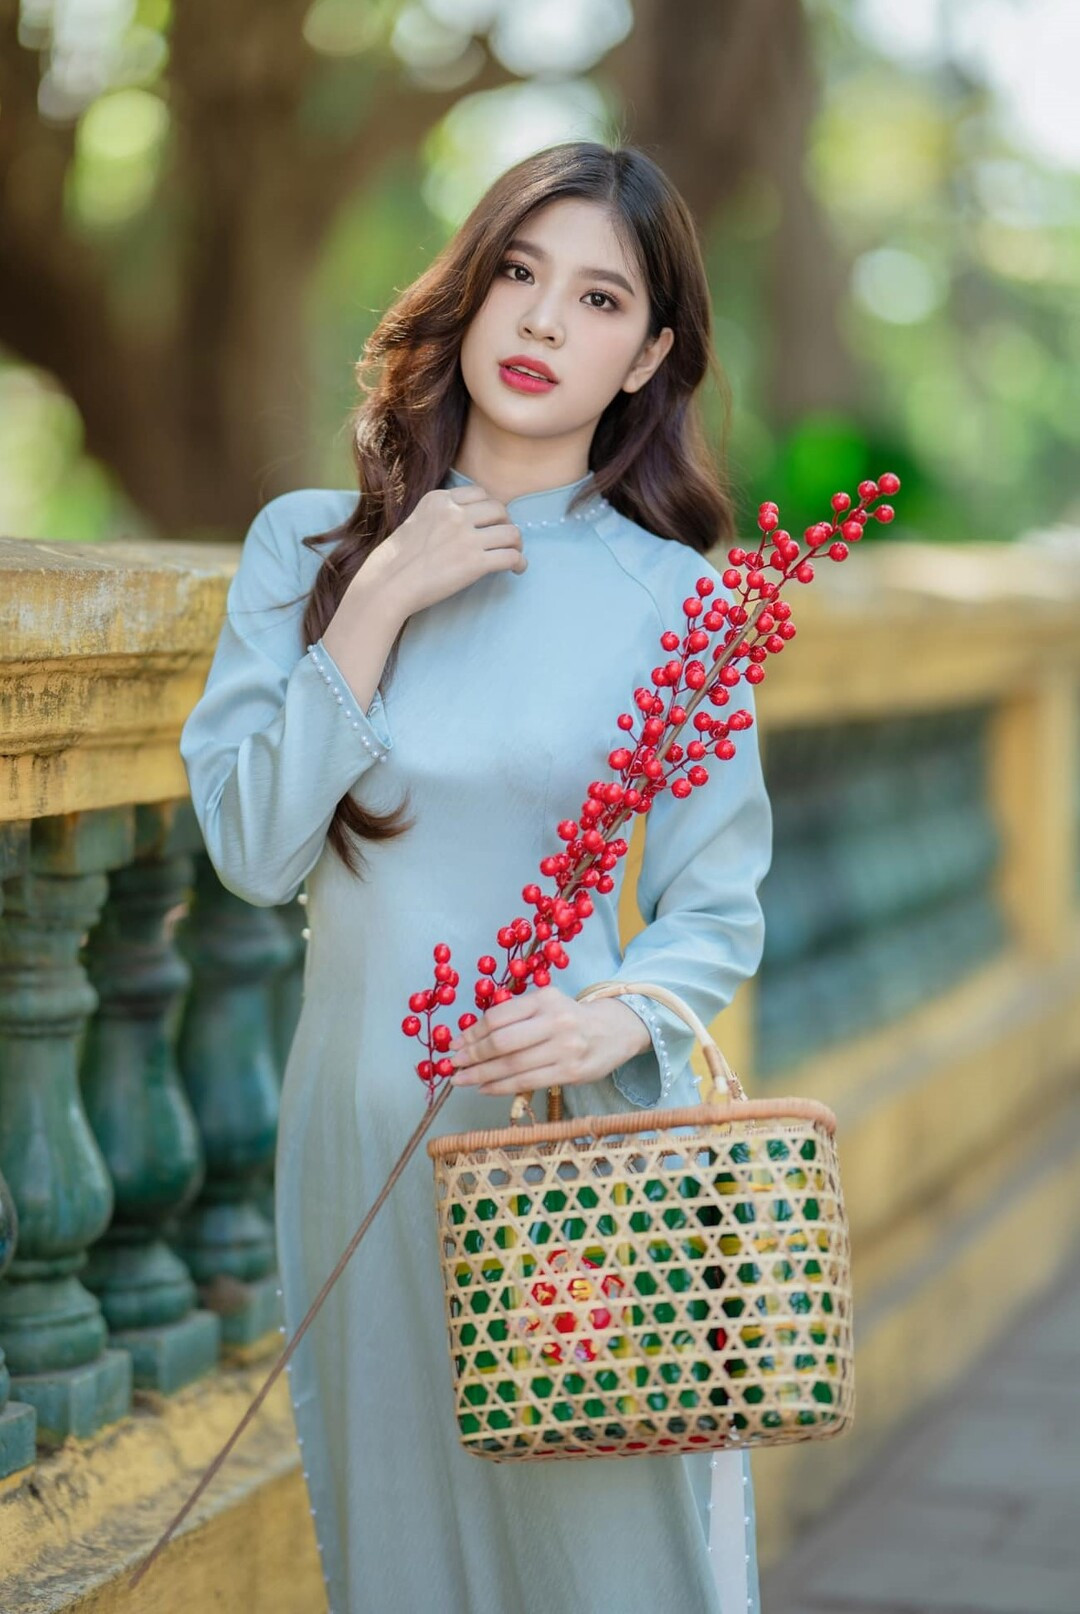 Hiện tại, Hoàng Huyên là người mẫu tự do và có đam mê kinh doanh. Cô đang chuẩn bị mở một thương hiệu thời trang riêng và dự định dành một phần doanh thu để quyên góp cho Hội Chữ thập đỏ Việt Nam.